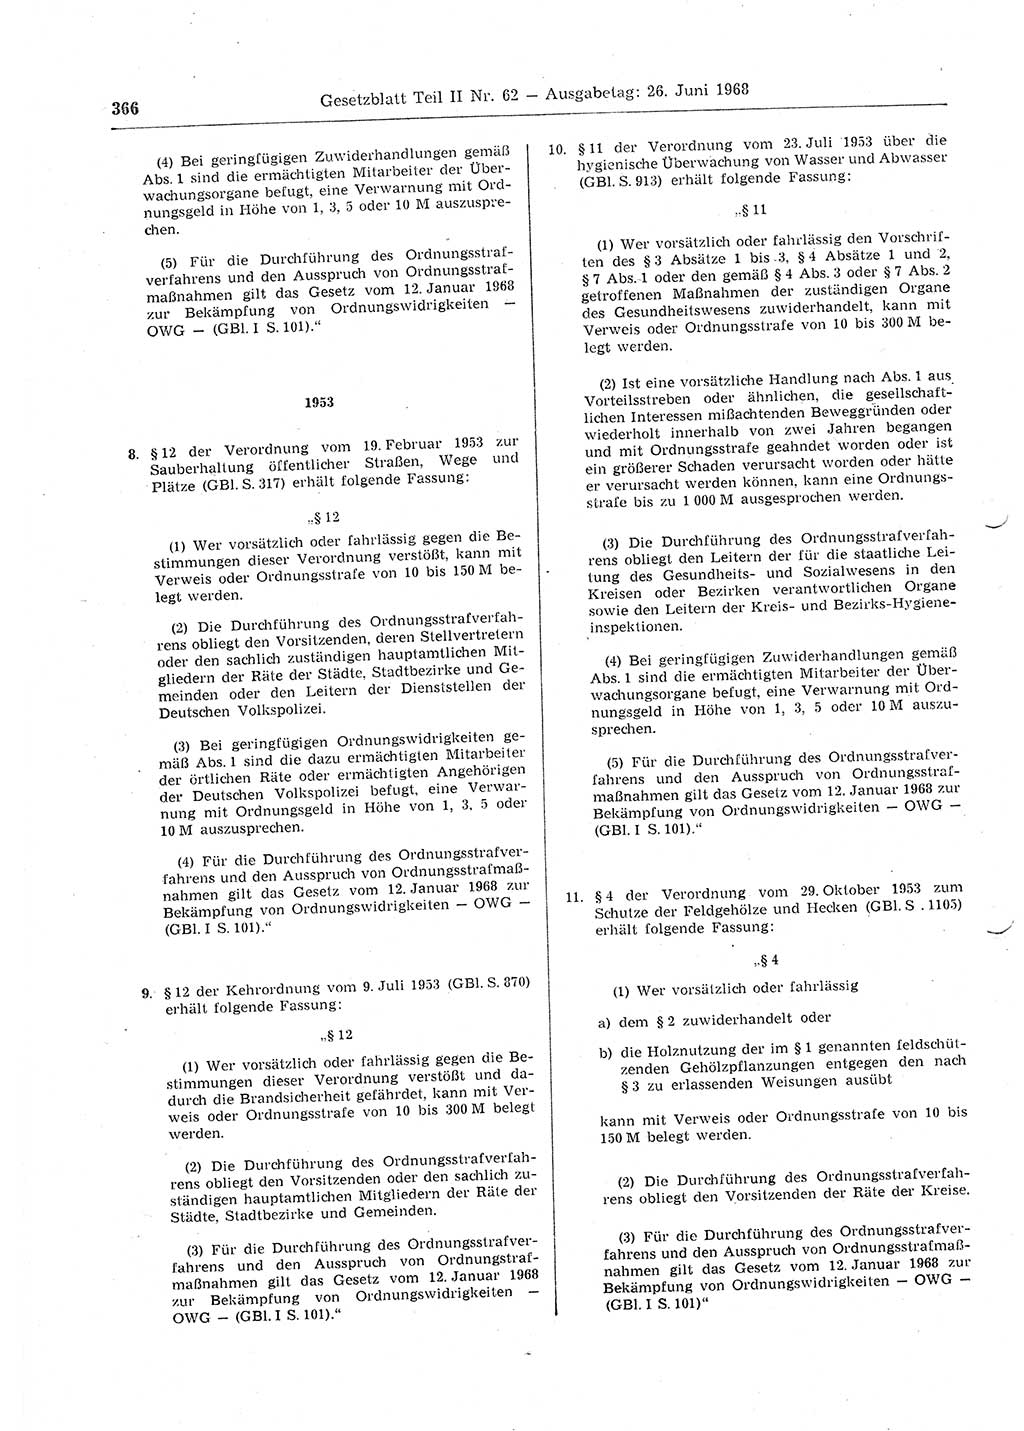 Gesetzblatt (GBl.) der Deutschen Demokratischen Republik (DDR) Teil ⅠⅠ 1968, Seite 366 (GBl. DDR ⅠⅠ 1968, S. 366)